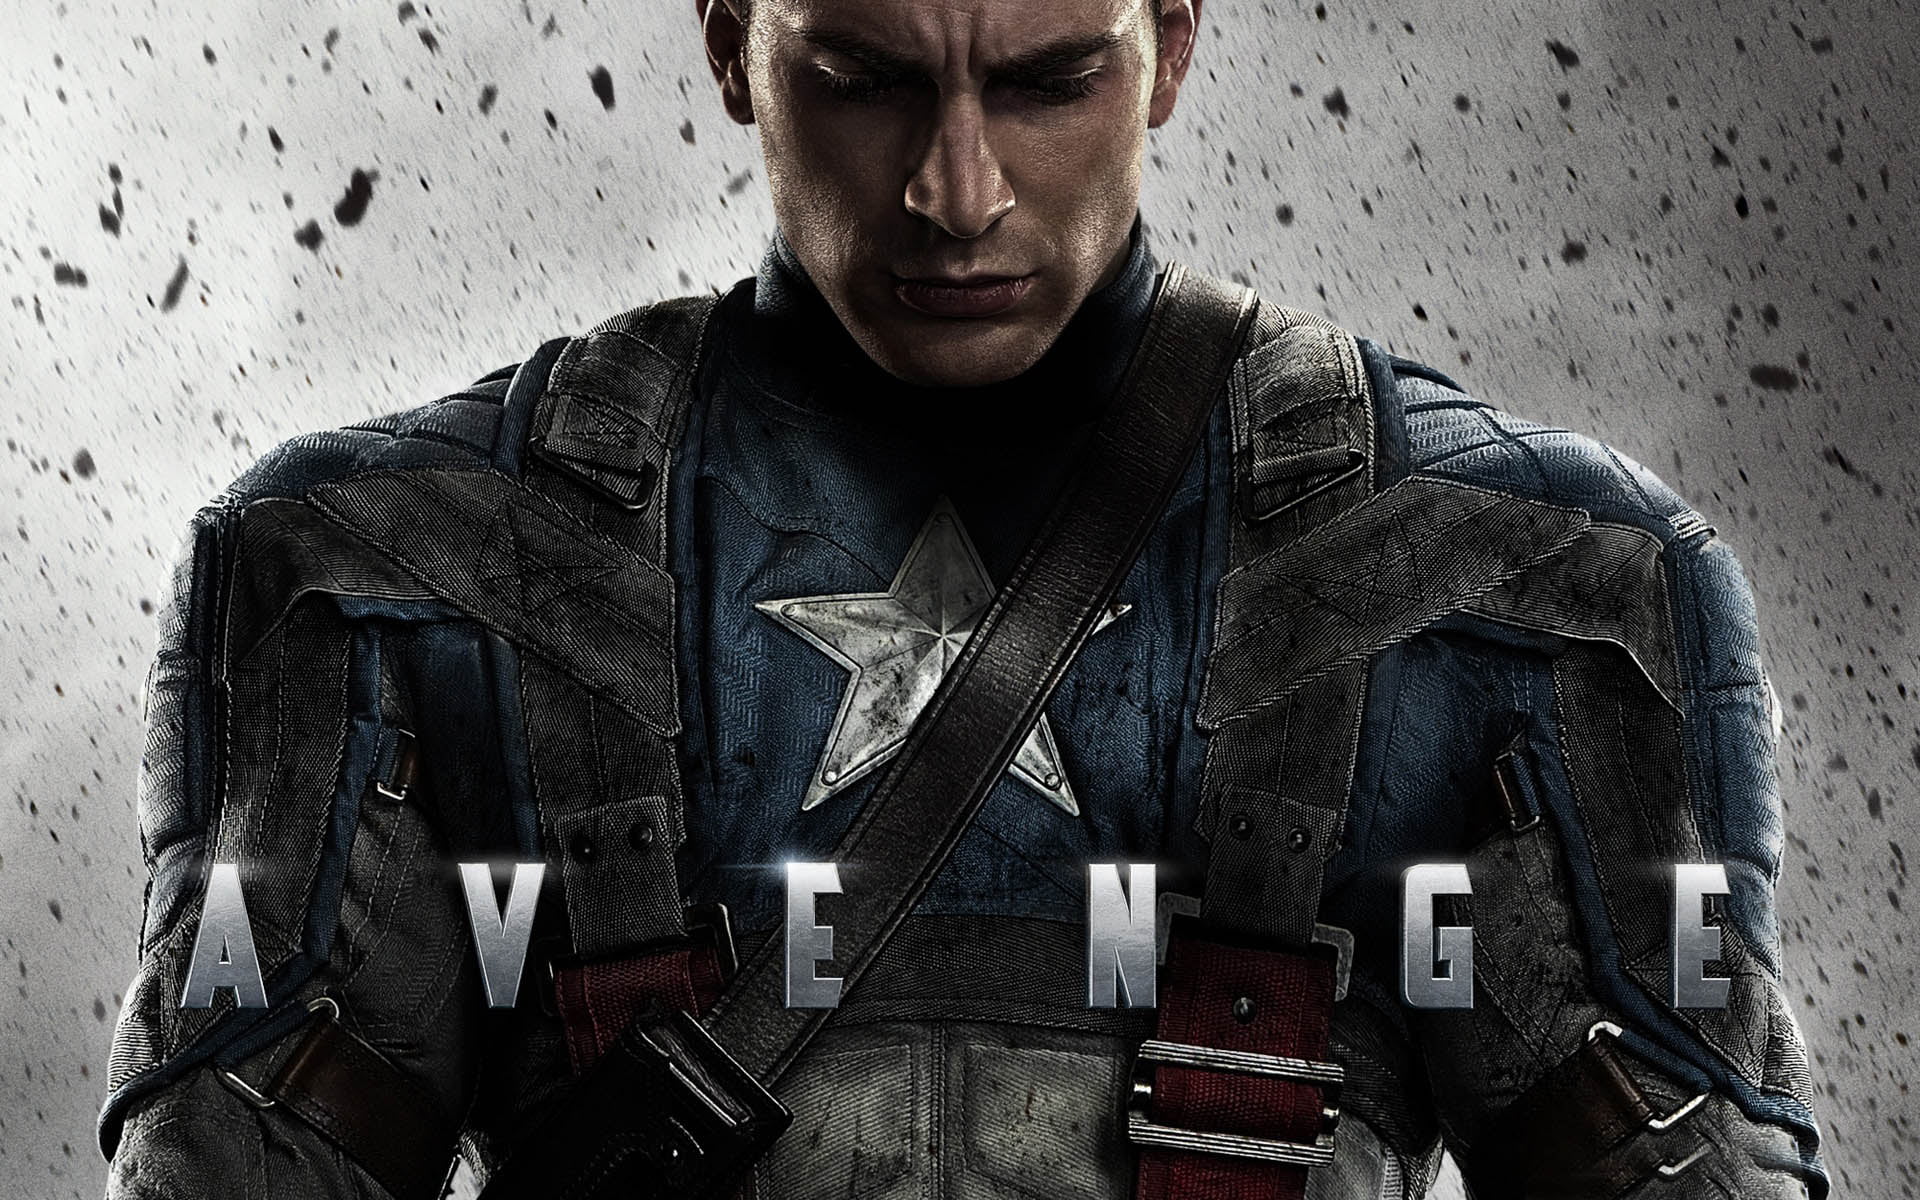 Avengers Captain America digital wallpaper